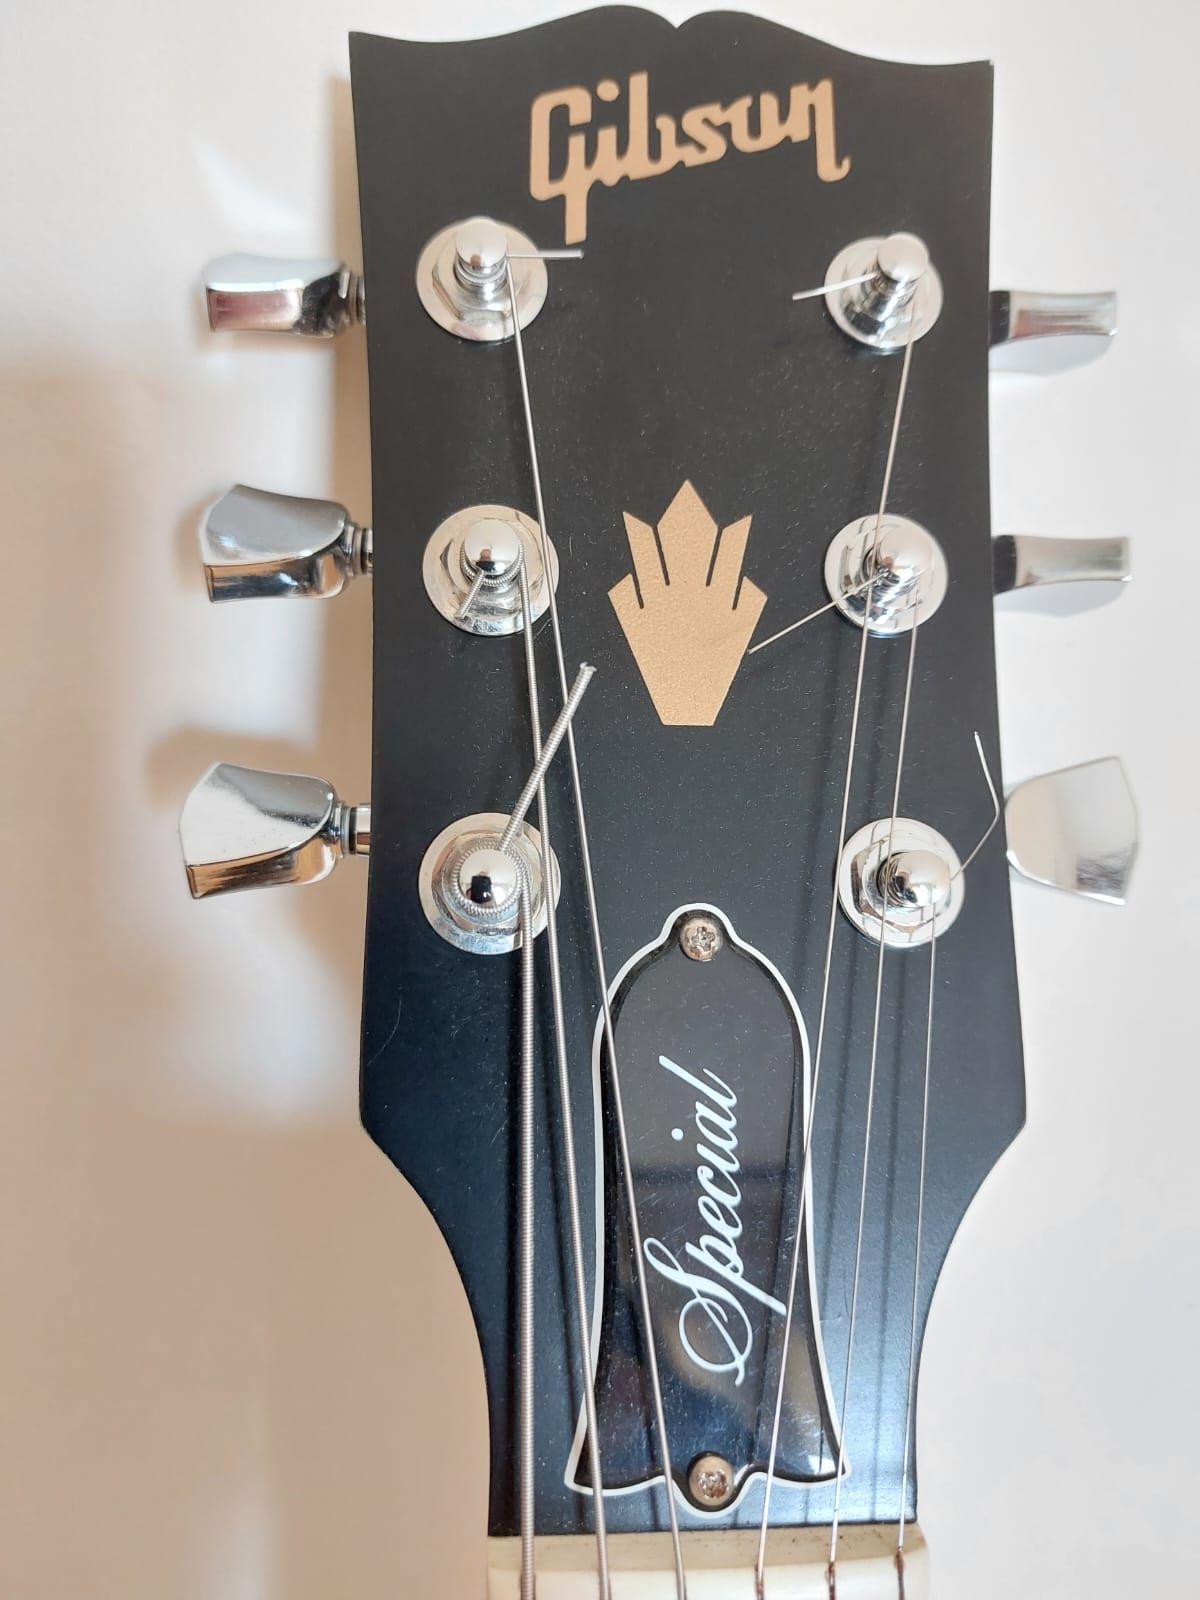 Gitara Gibson SG Special T SV 2017 r. USA  Classic 57+